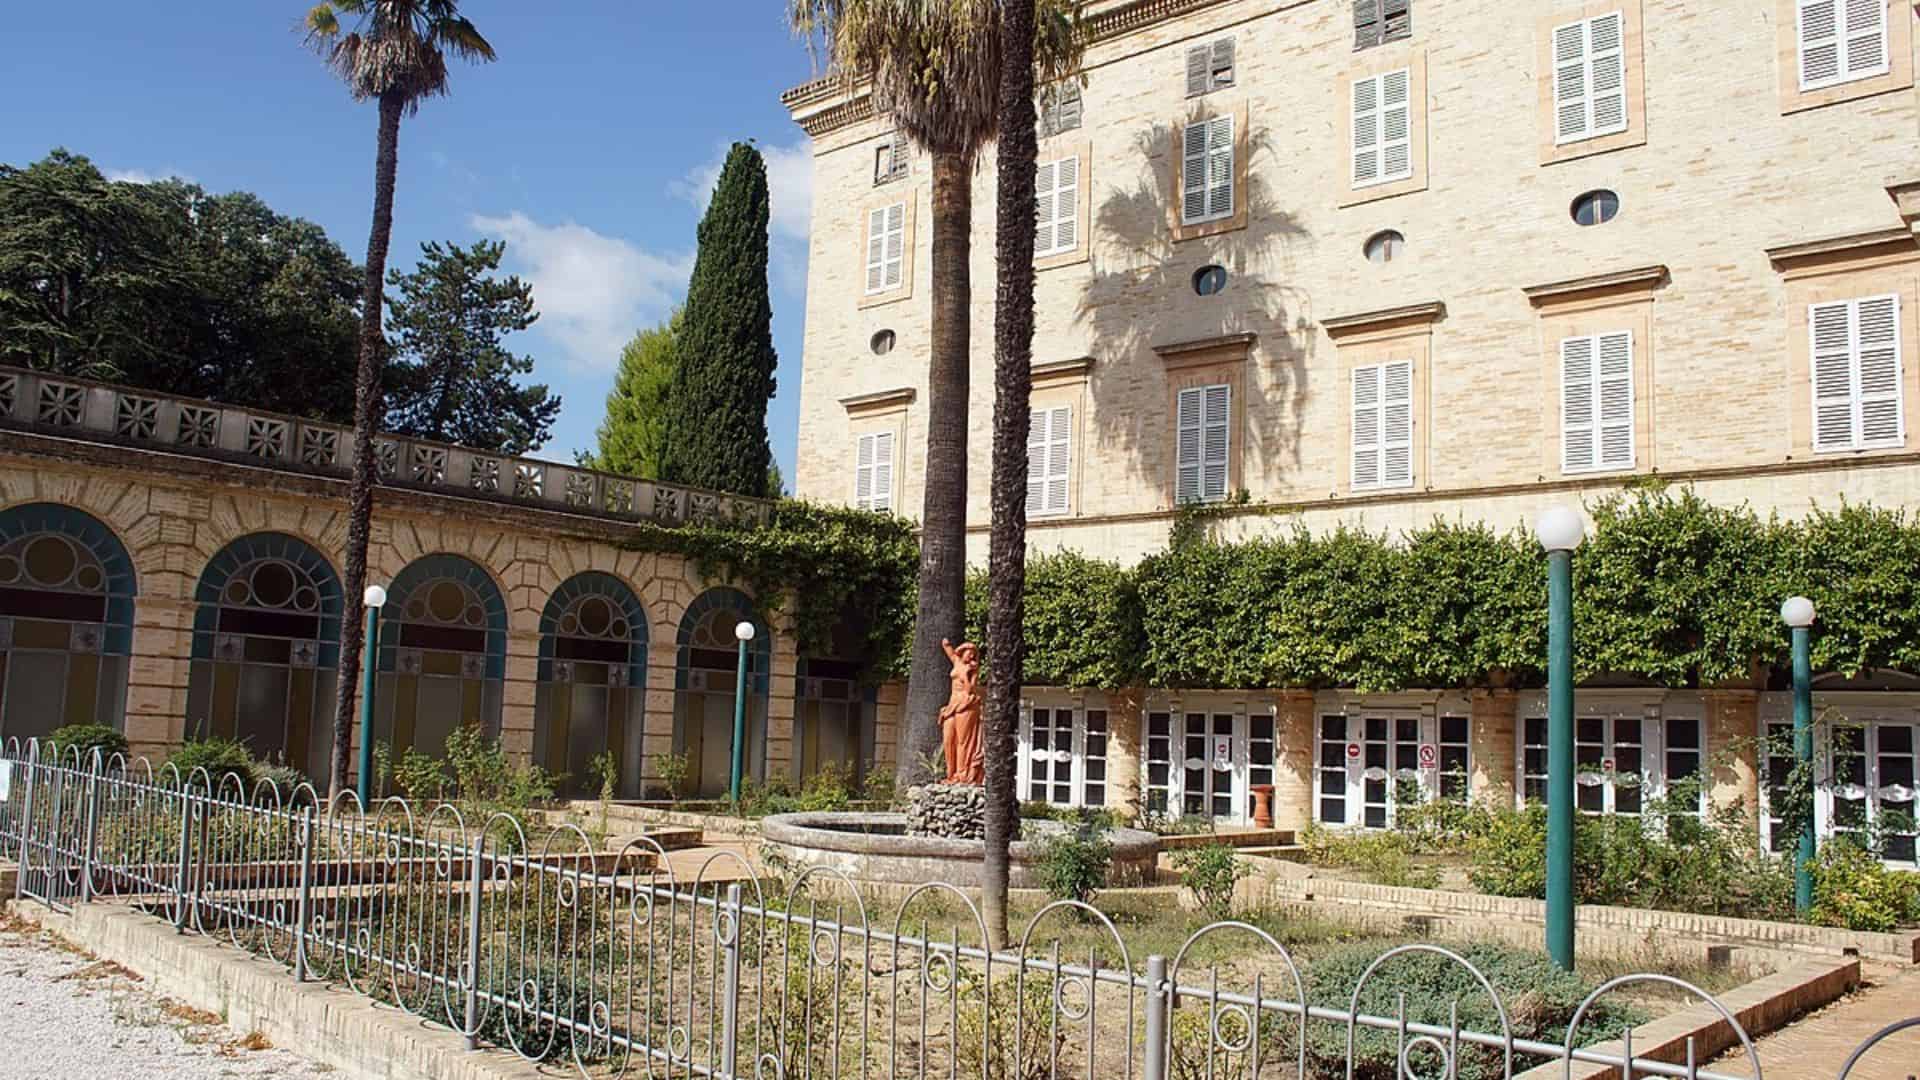 Facade and gardens of villa Vitali in Fermo (image source: padercol)